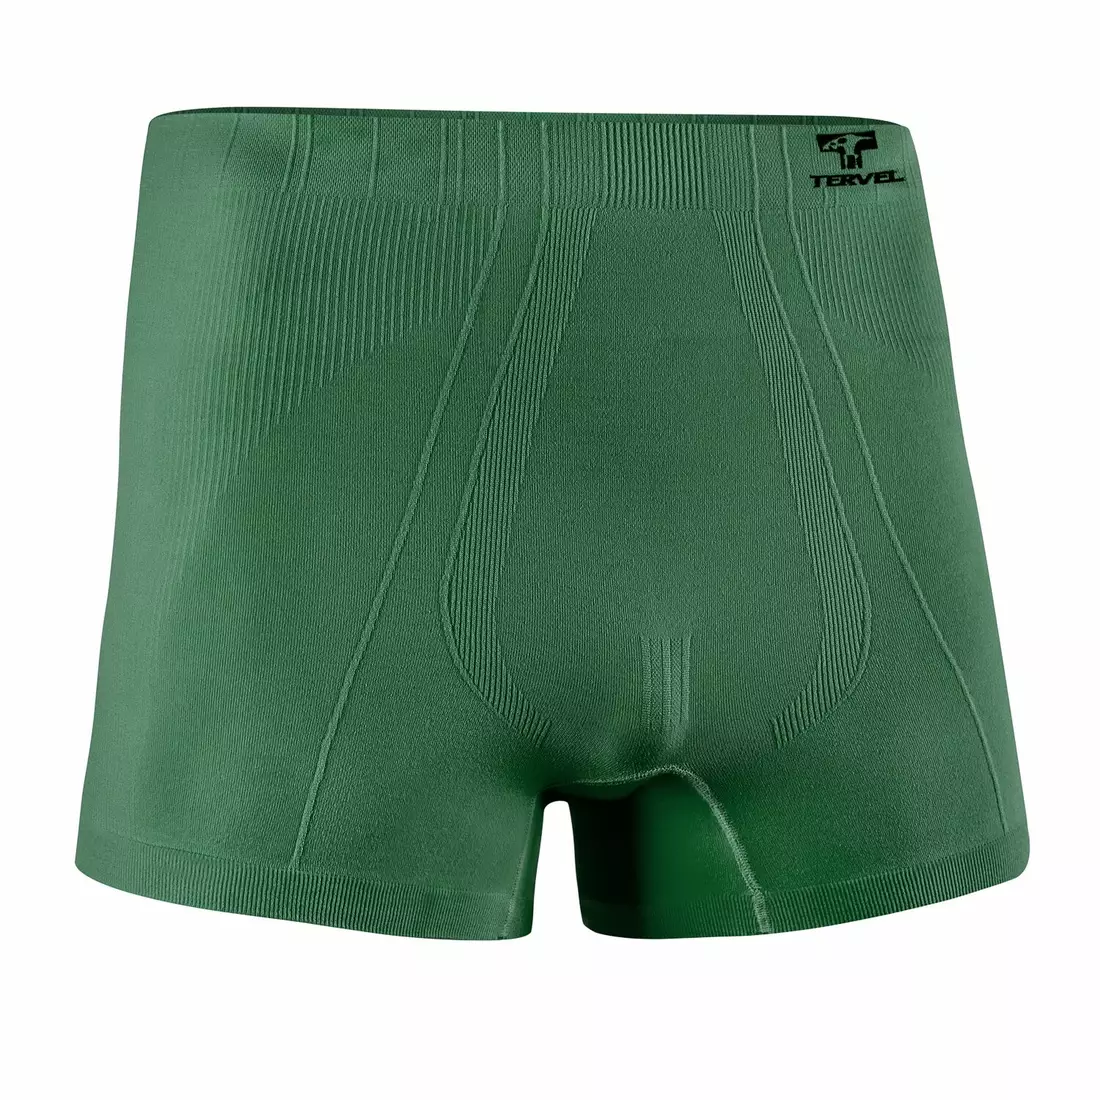 TERVEL - COMFORTLINE 3302 - boxer pentru bărbați, culoare: Military (verde)